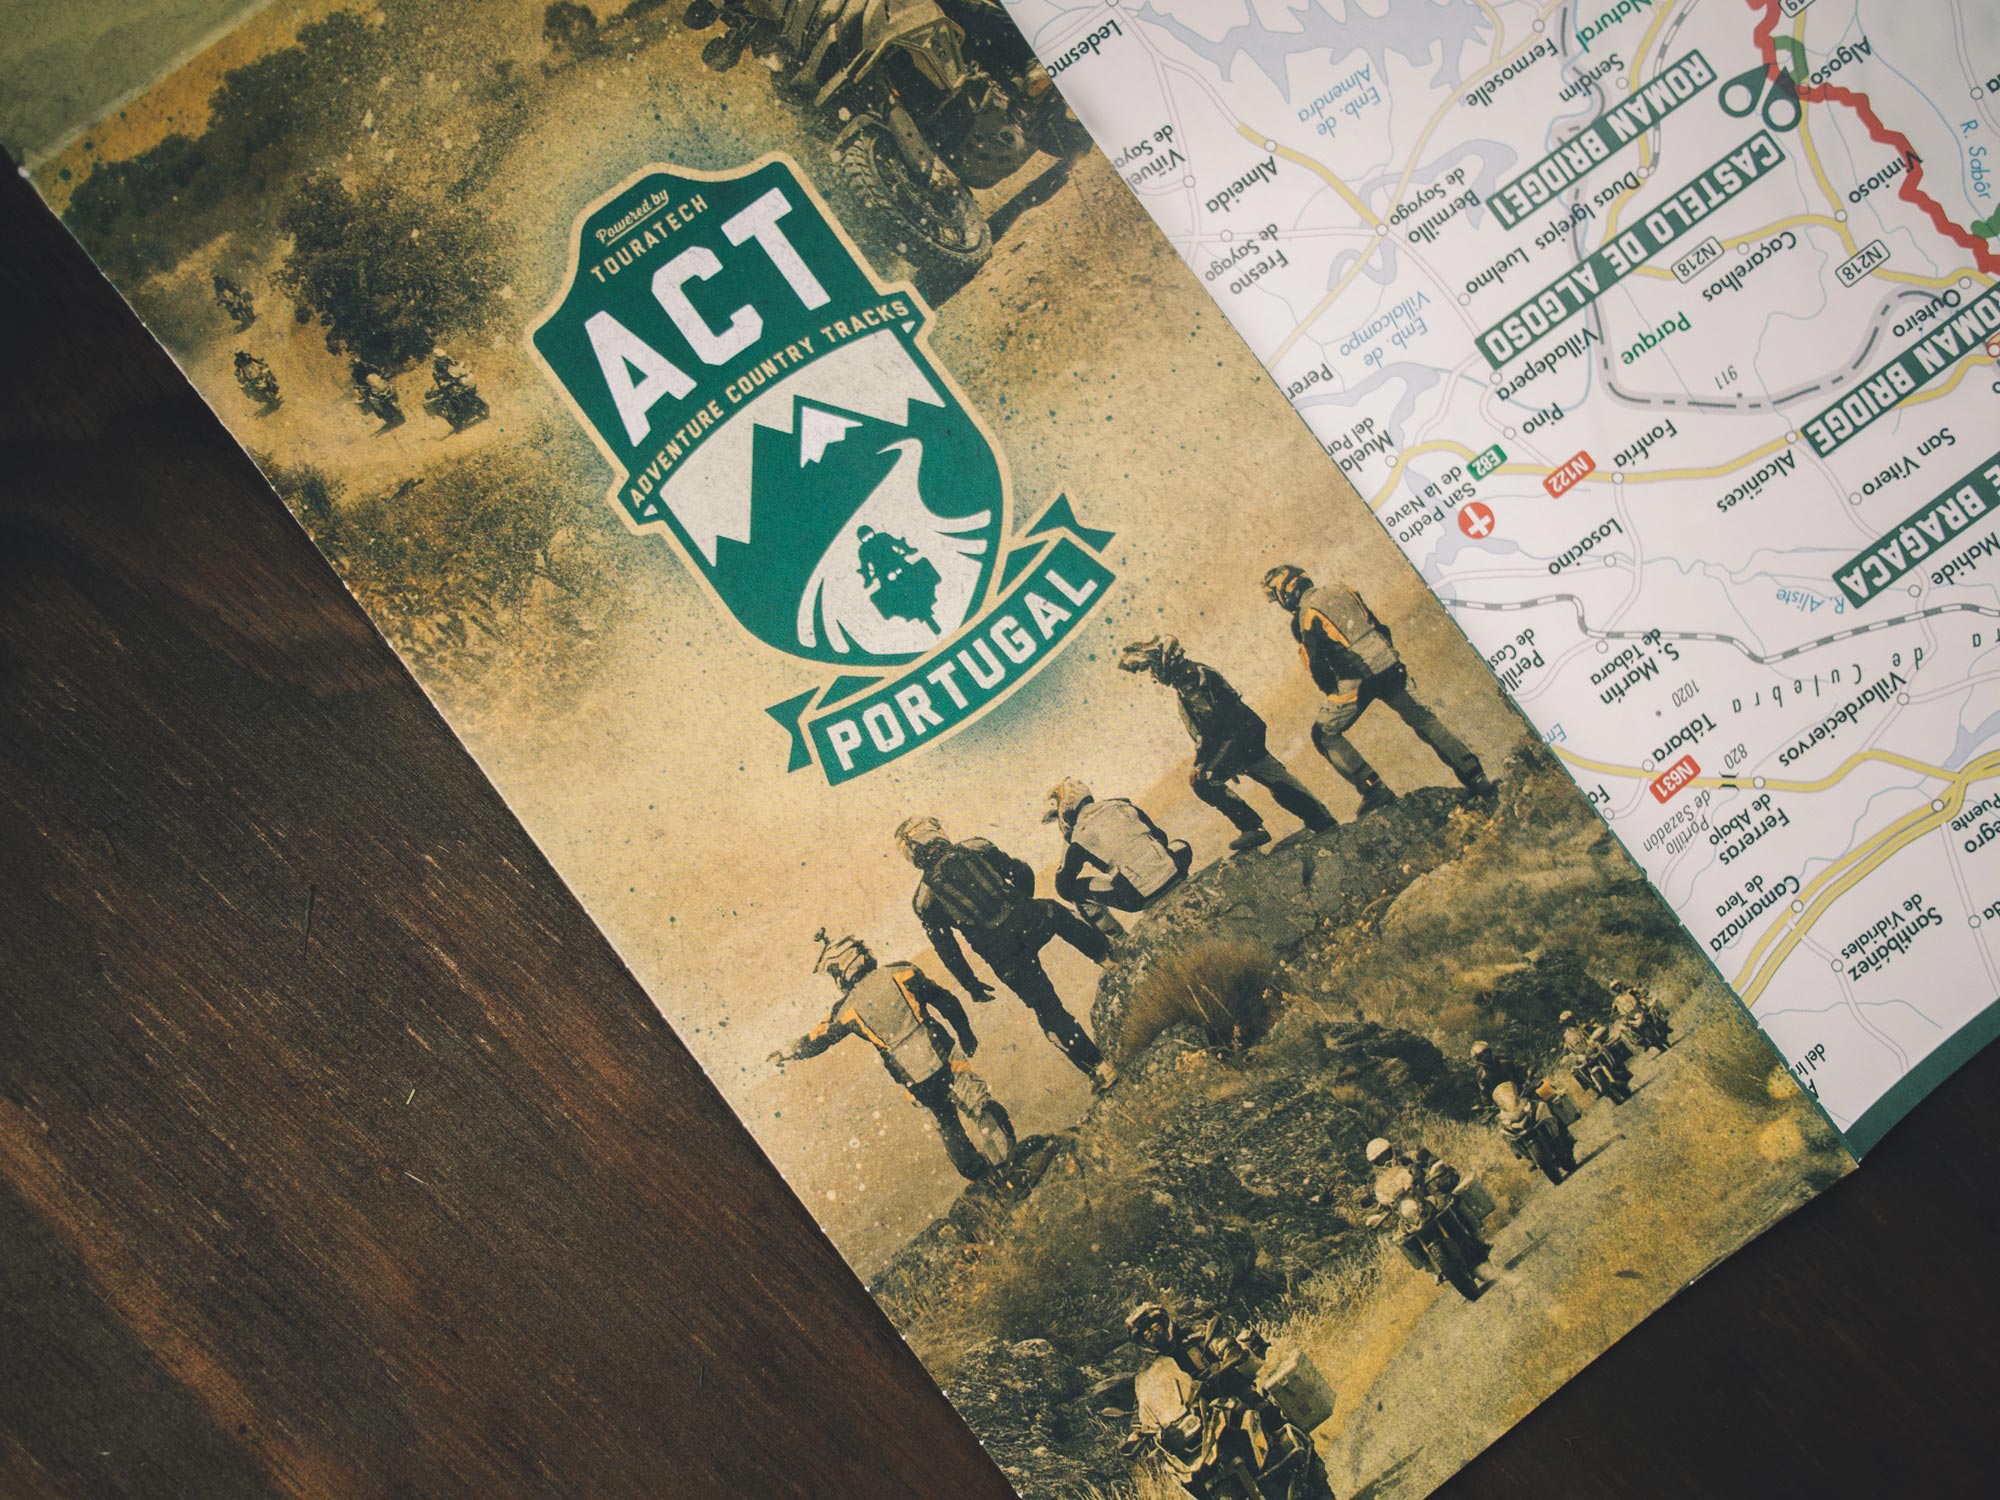 Man sieht das Foto der Straßenkarte zu den Adventure Country Tracks von TOURATECH, Version Portugal. Die Vorderseite dominiert das ACT-Logo, im Innenteil sieht man die Straßen-Karte. Das Corporate Design ist von MAJORMAJOR.